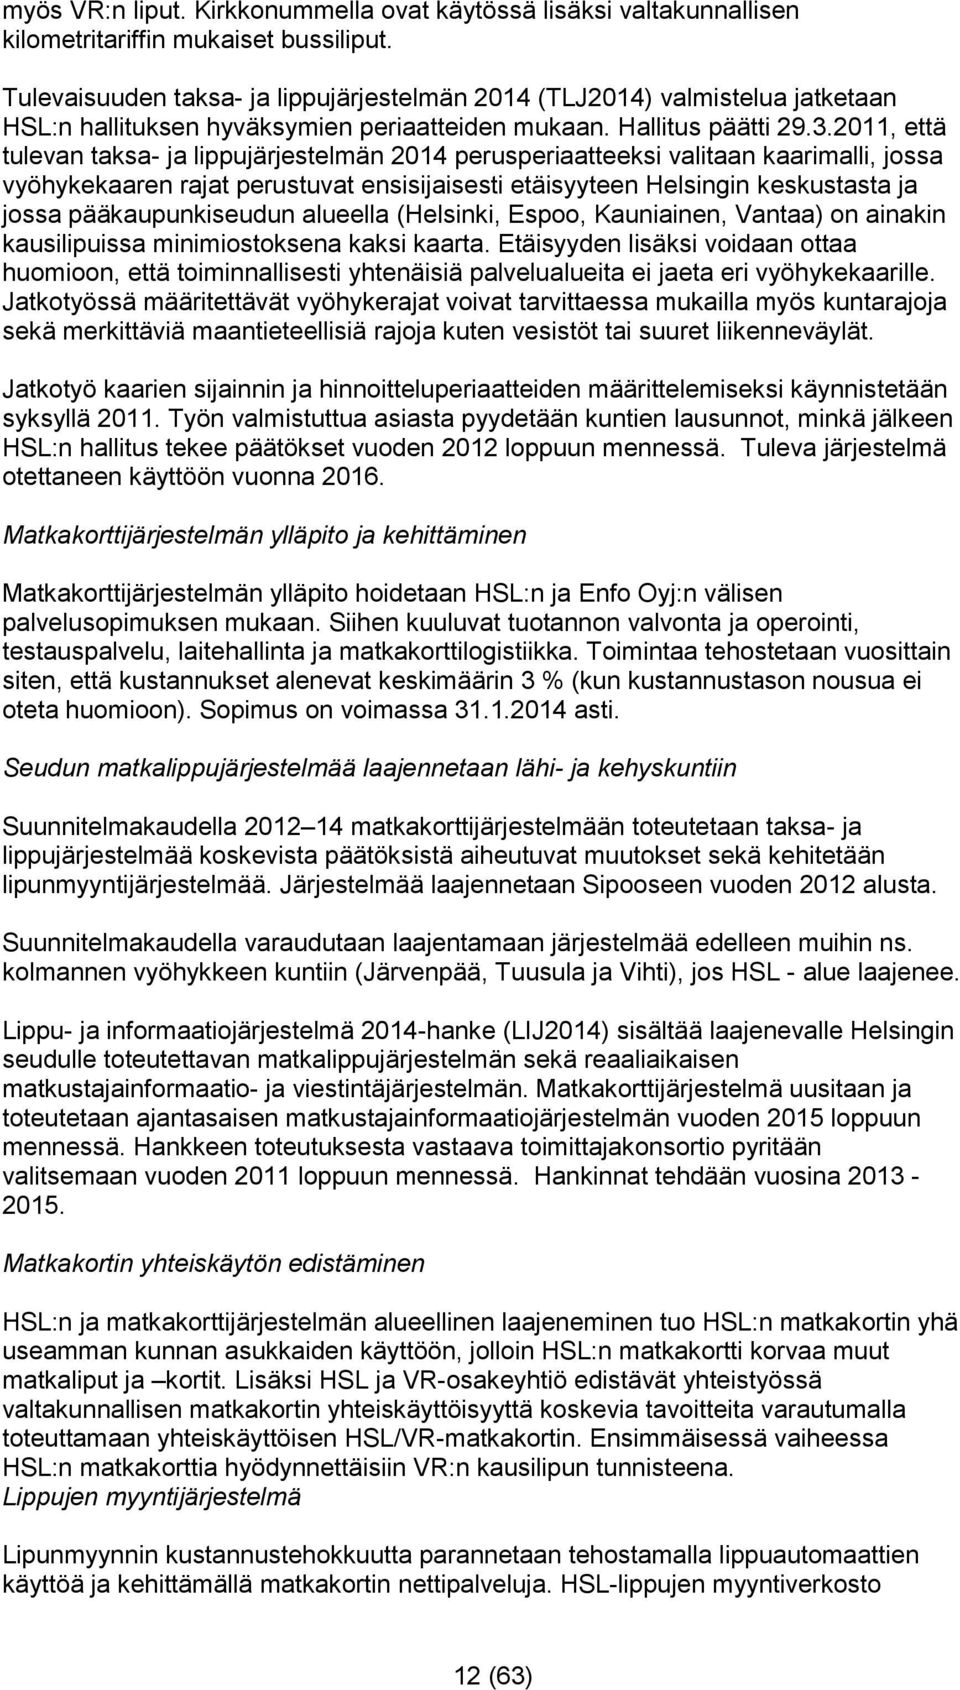 2011, että tulevan taksa- ja lippujärjestelmän 2014 perusperiaatteeksi valitaan kaarimalli, jossa vyöhykekaaren rajat perustuvat ensisijaisesti etäisyyteen Helsingin keskustasta ja jossa